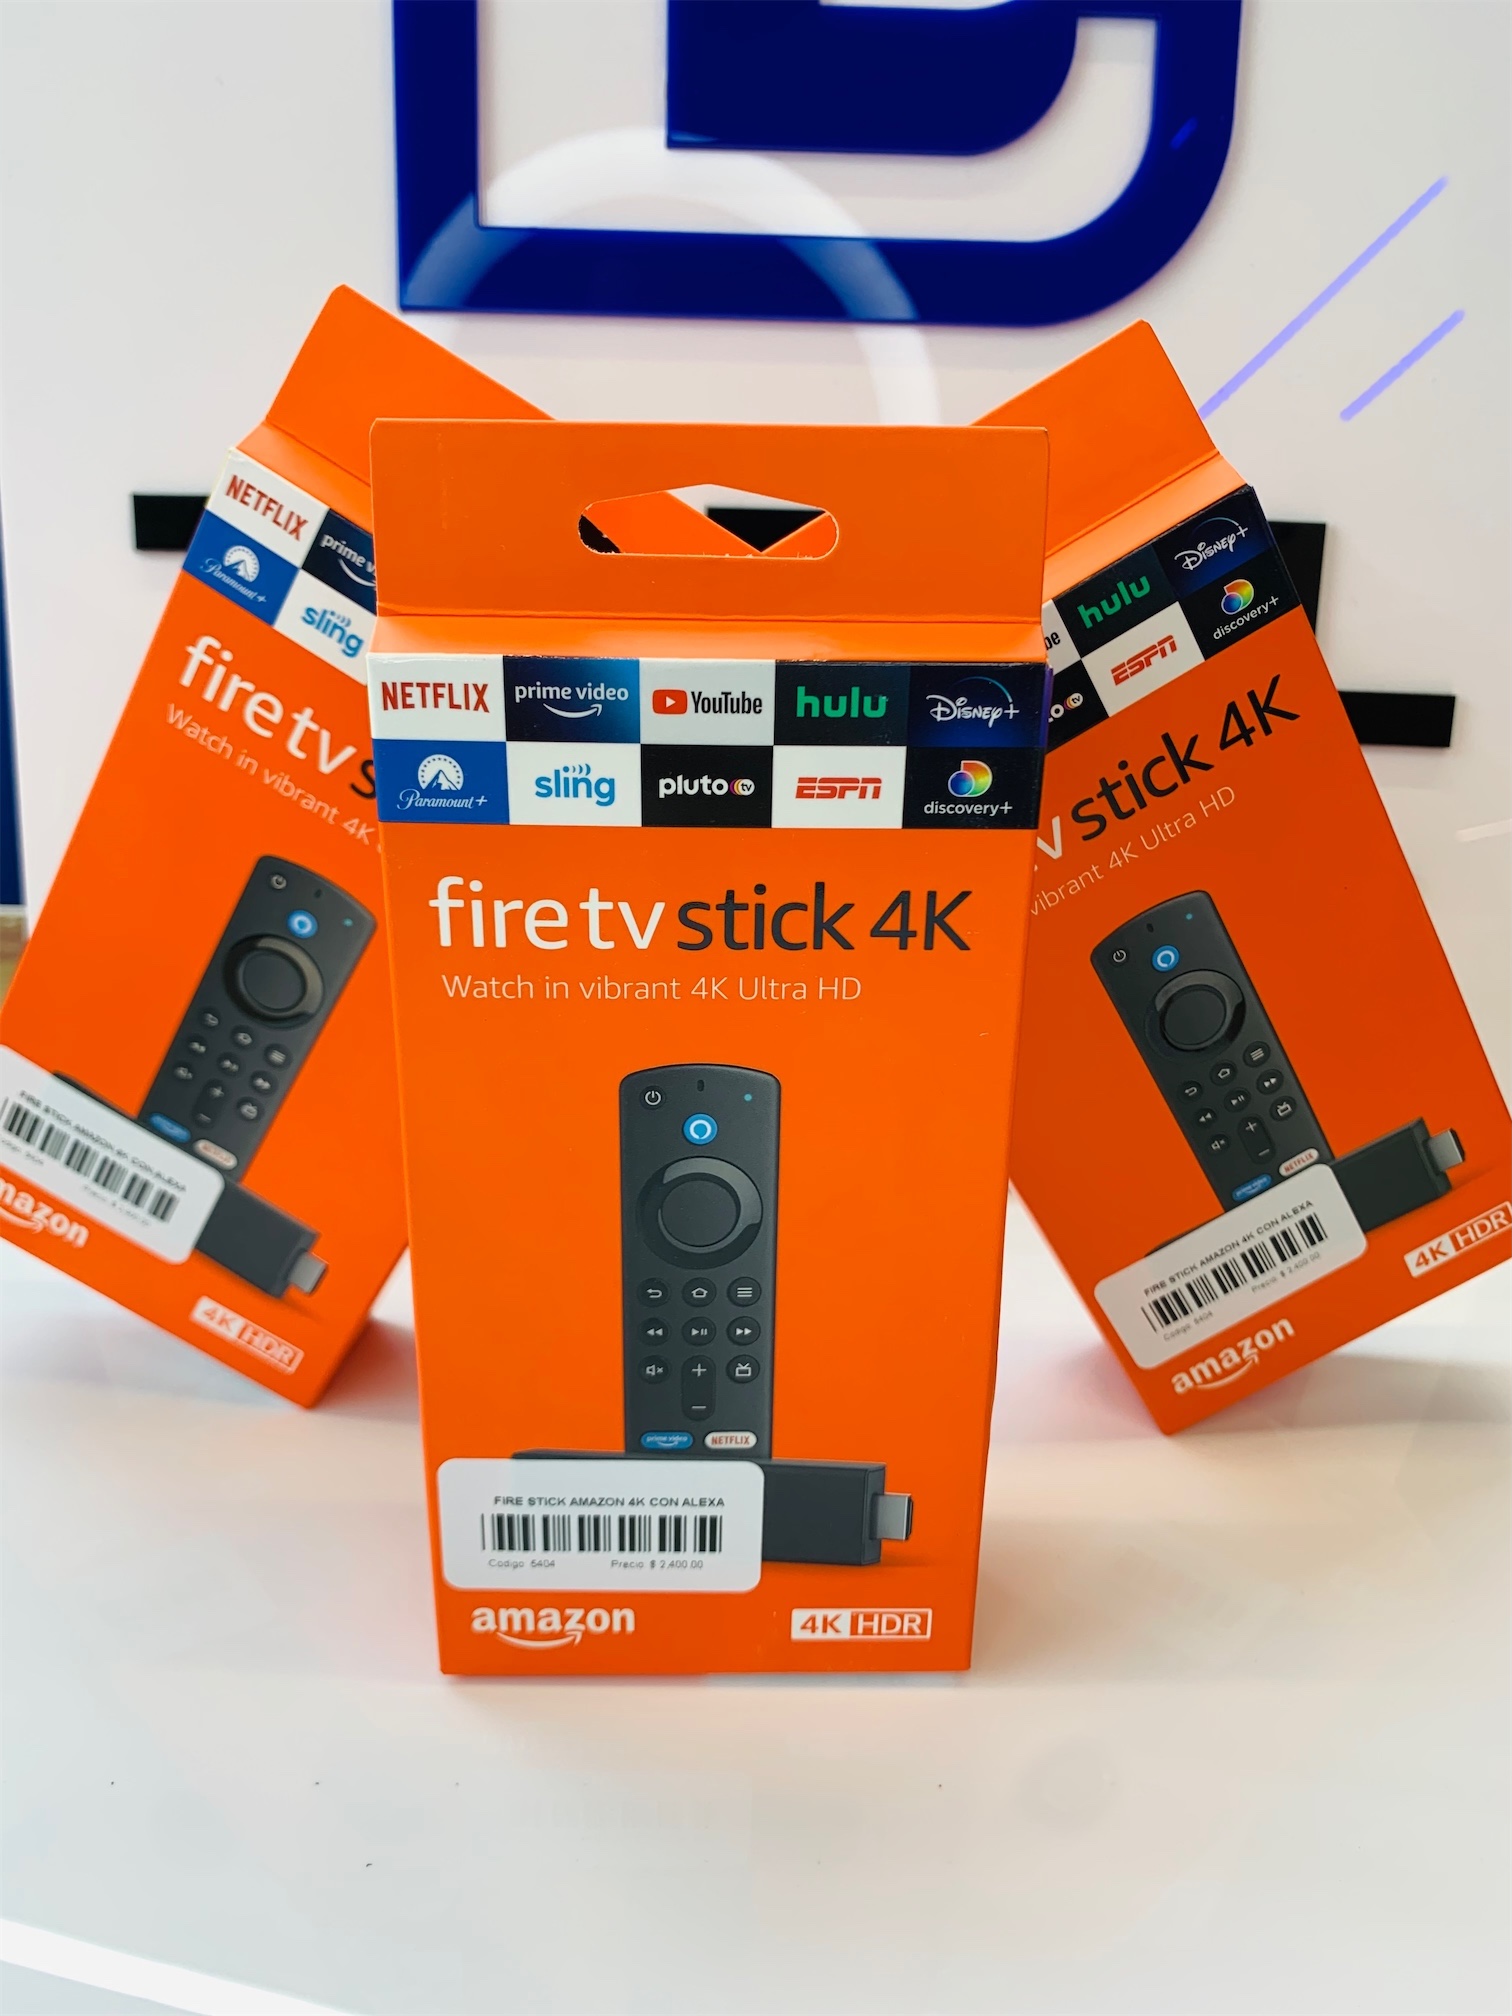 accesorios para electronica - Fire TV stick 4K